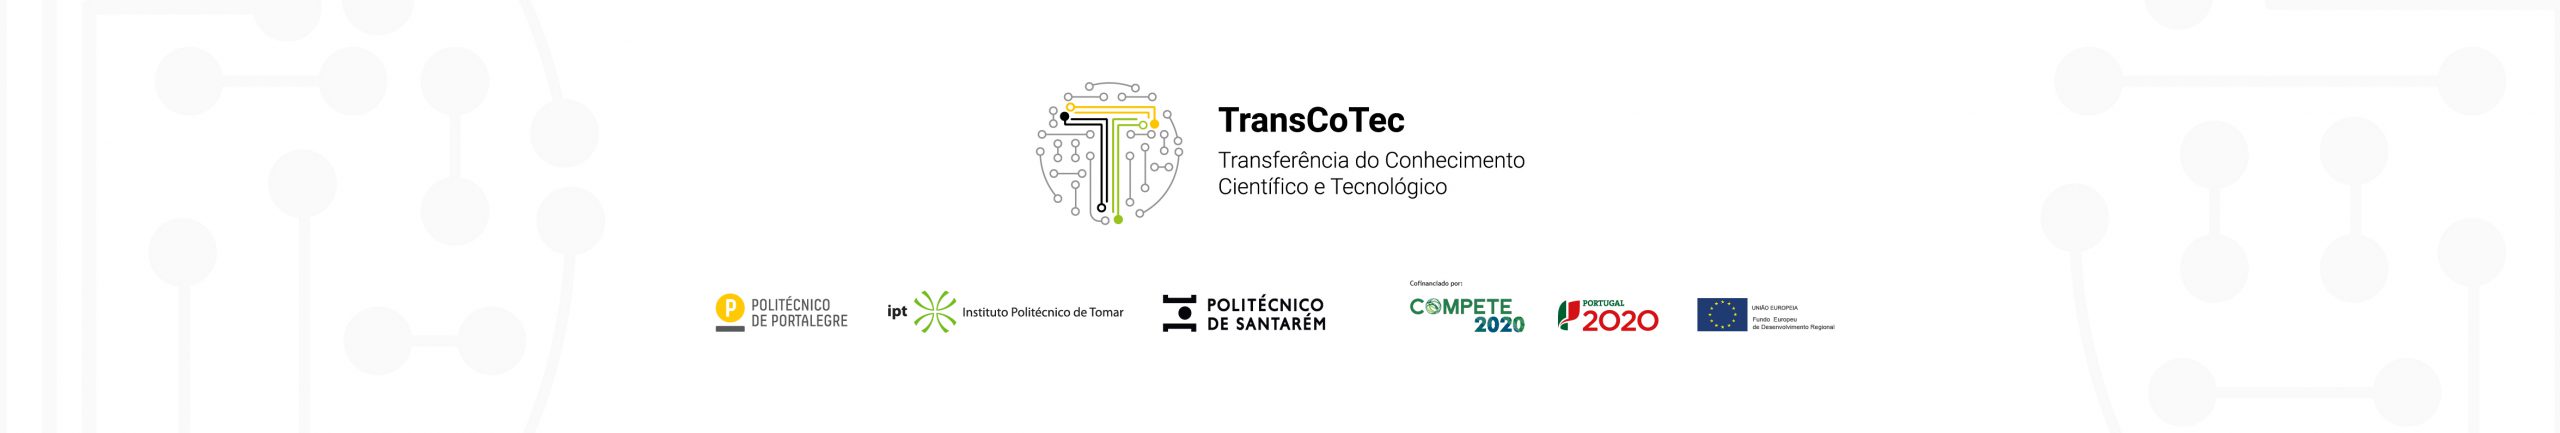 TransCoTec